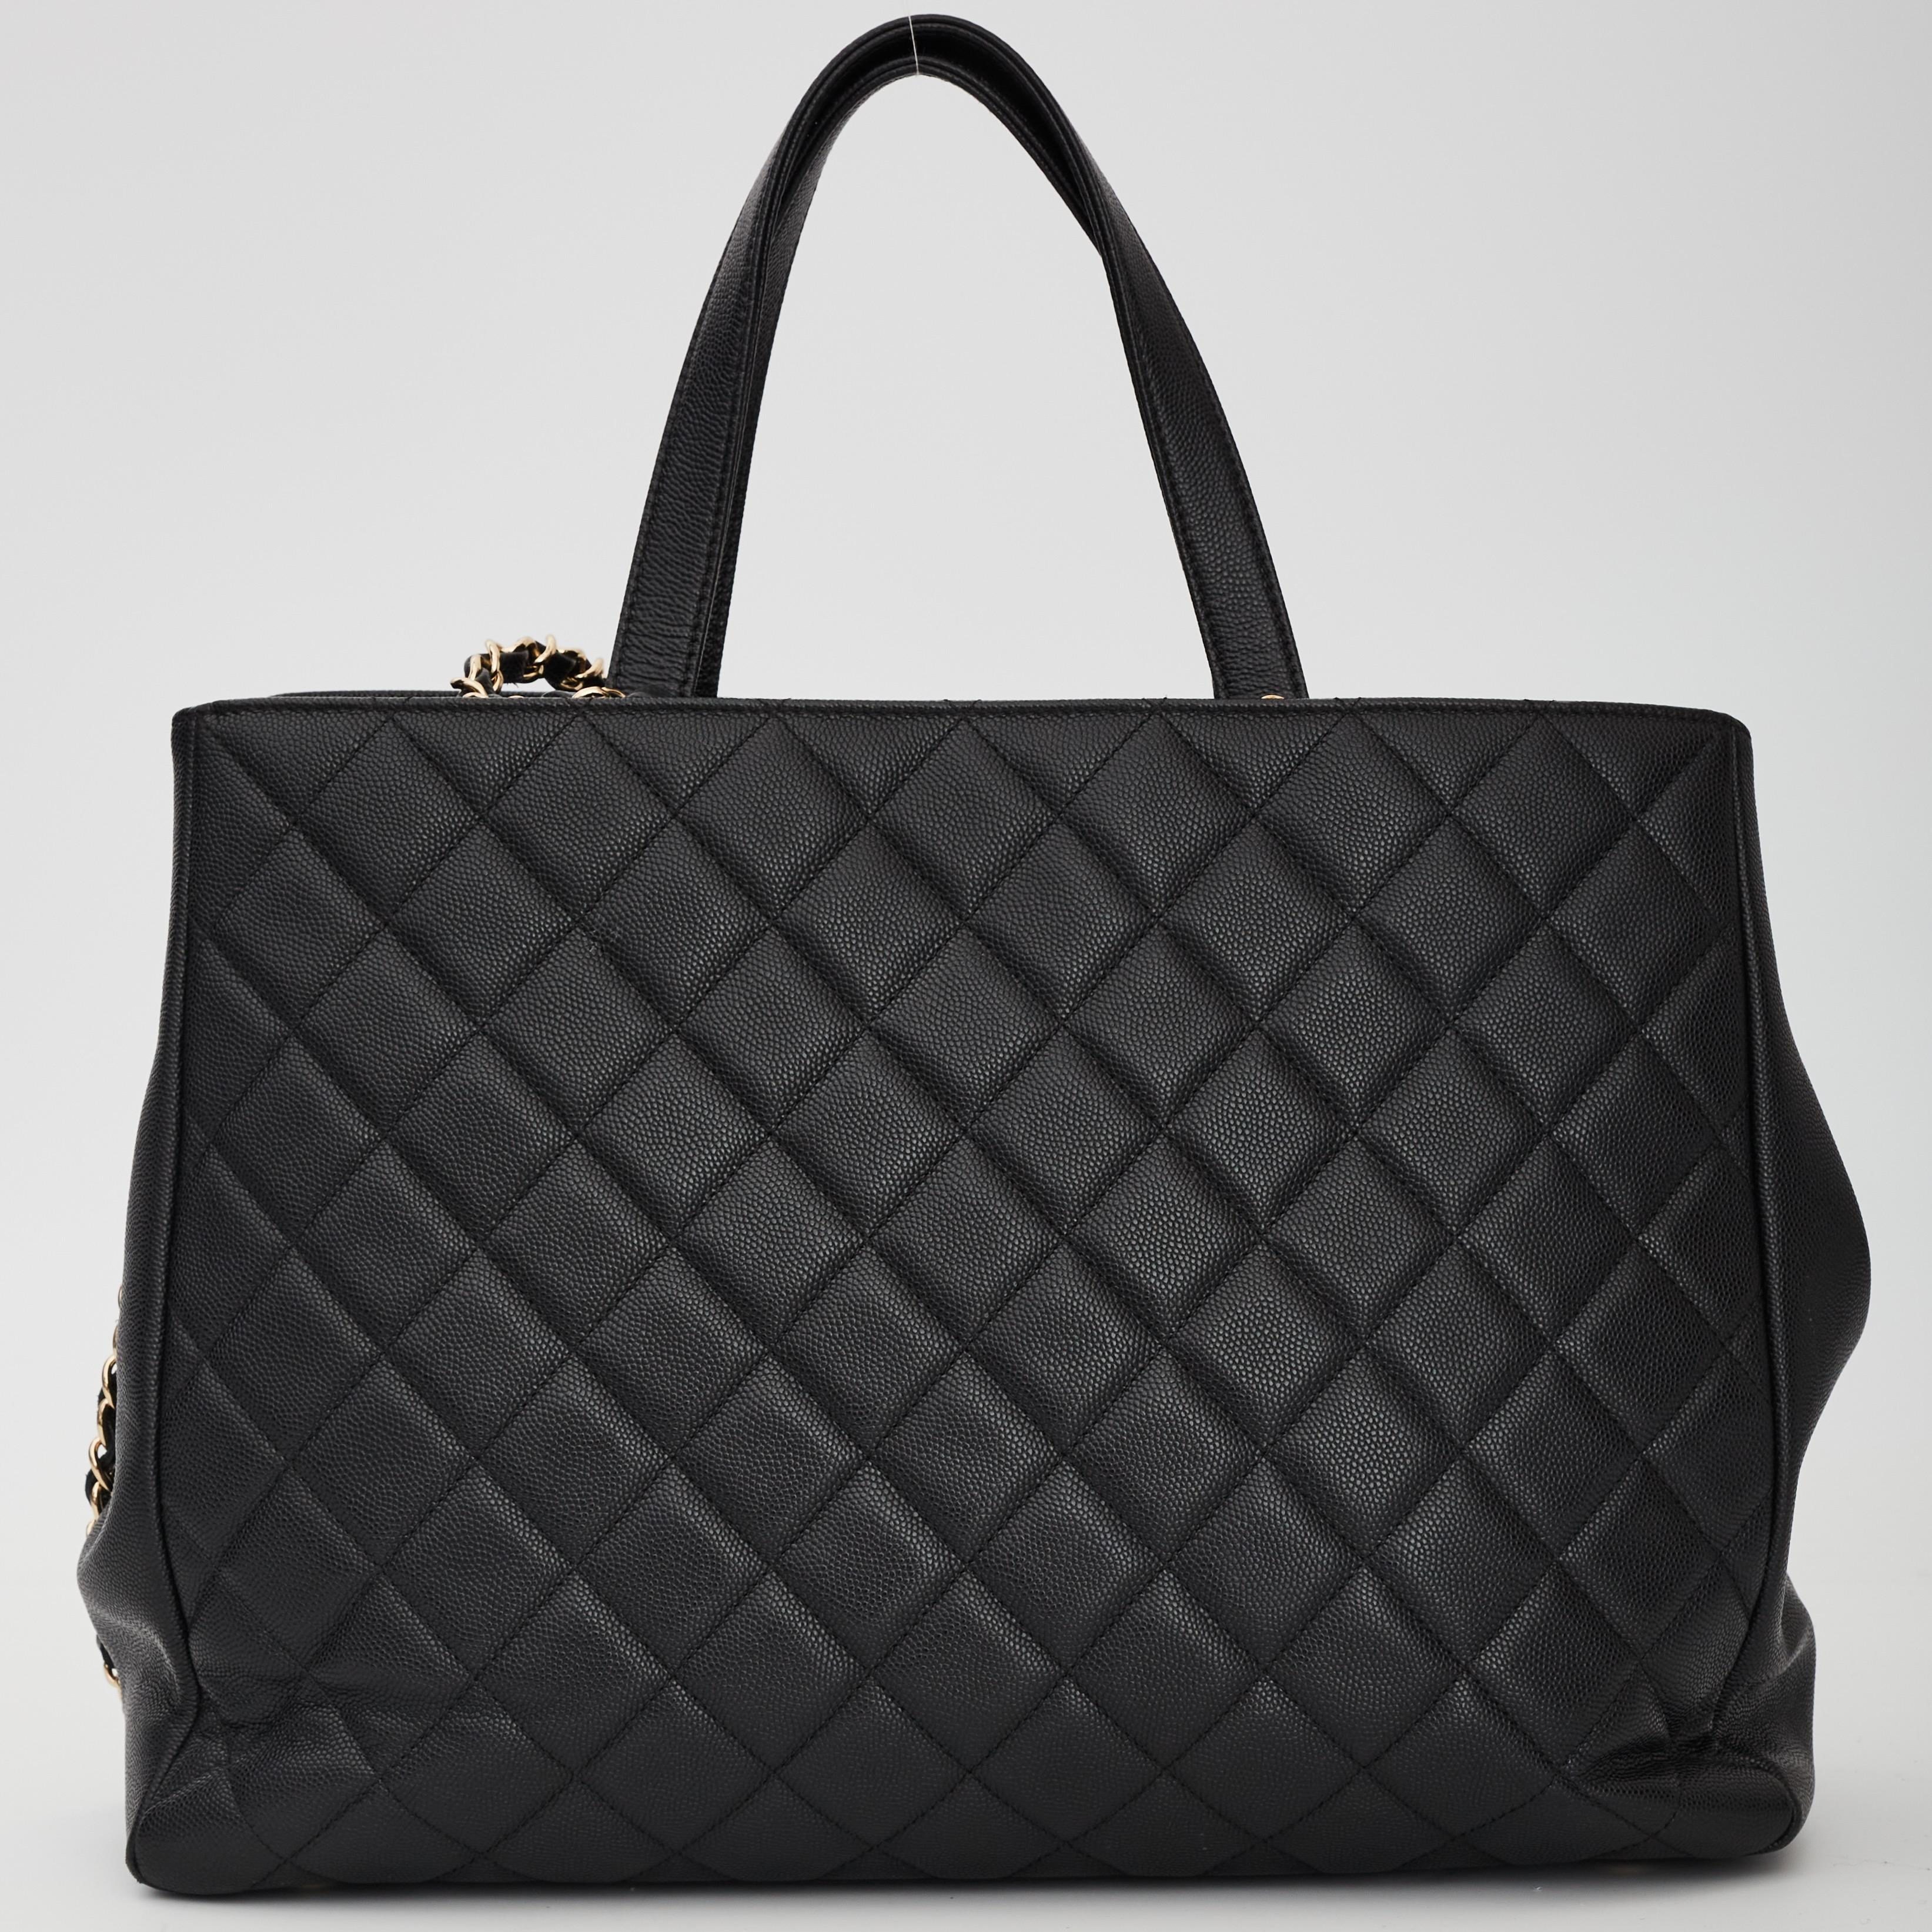 Ce sac de style fourre-tout Chanel est fabriqué en cuir caviar durable de couleur noire. Le sac est doté d'un revêtement doré, de deux poignées plates en cuir, d'une bandoulière en option, d'une fermeture à glissière CC, d'une poche frontale zippée